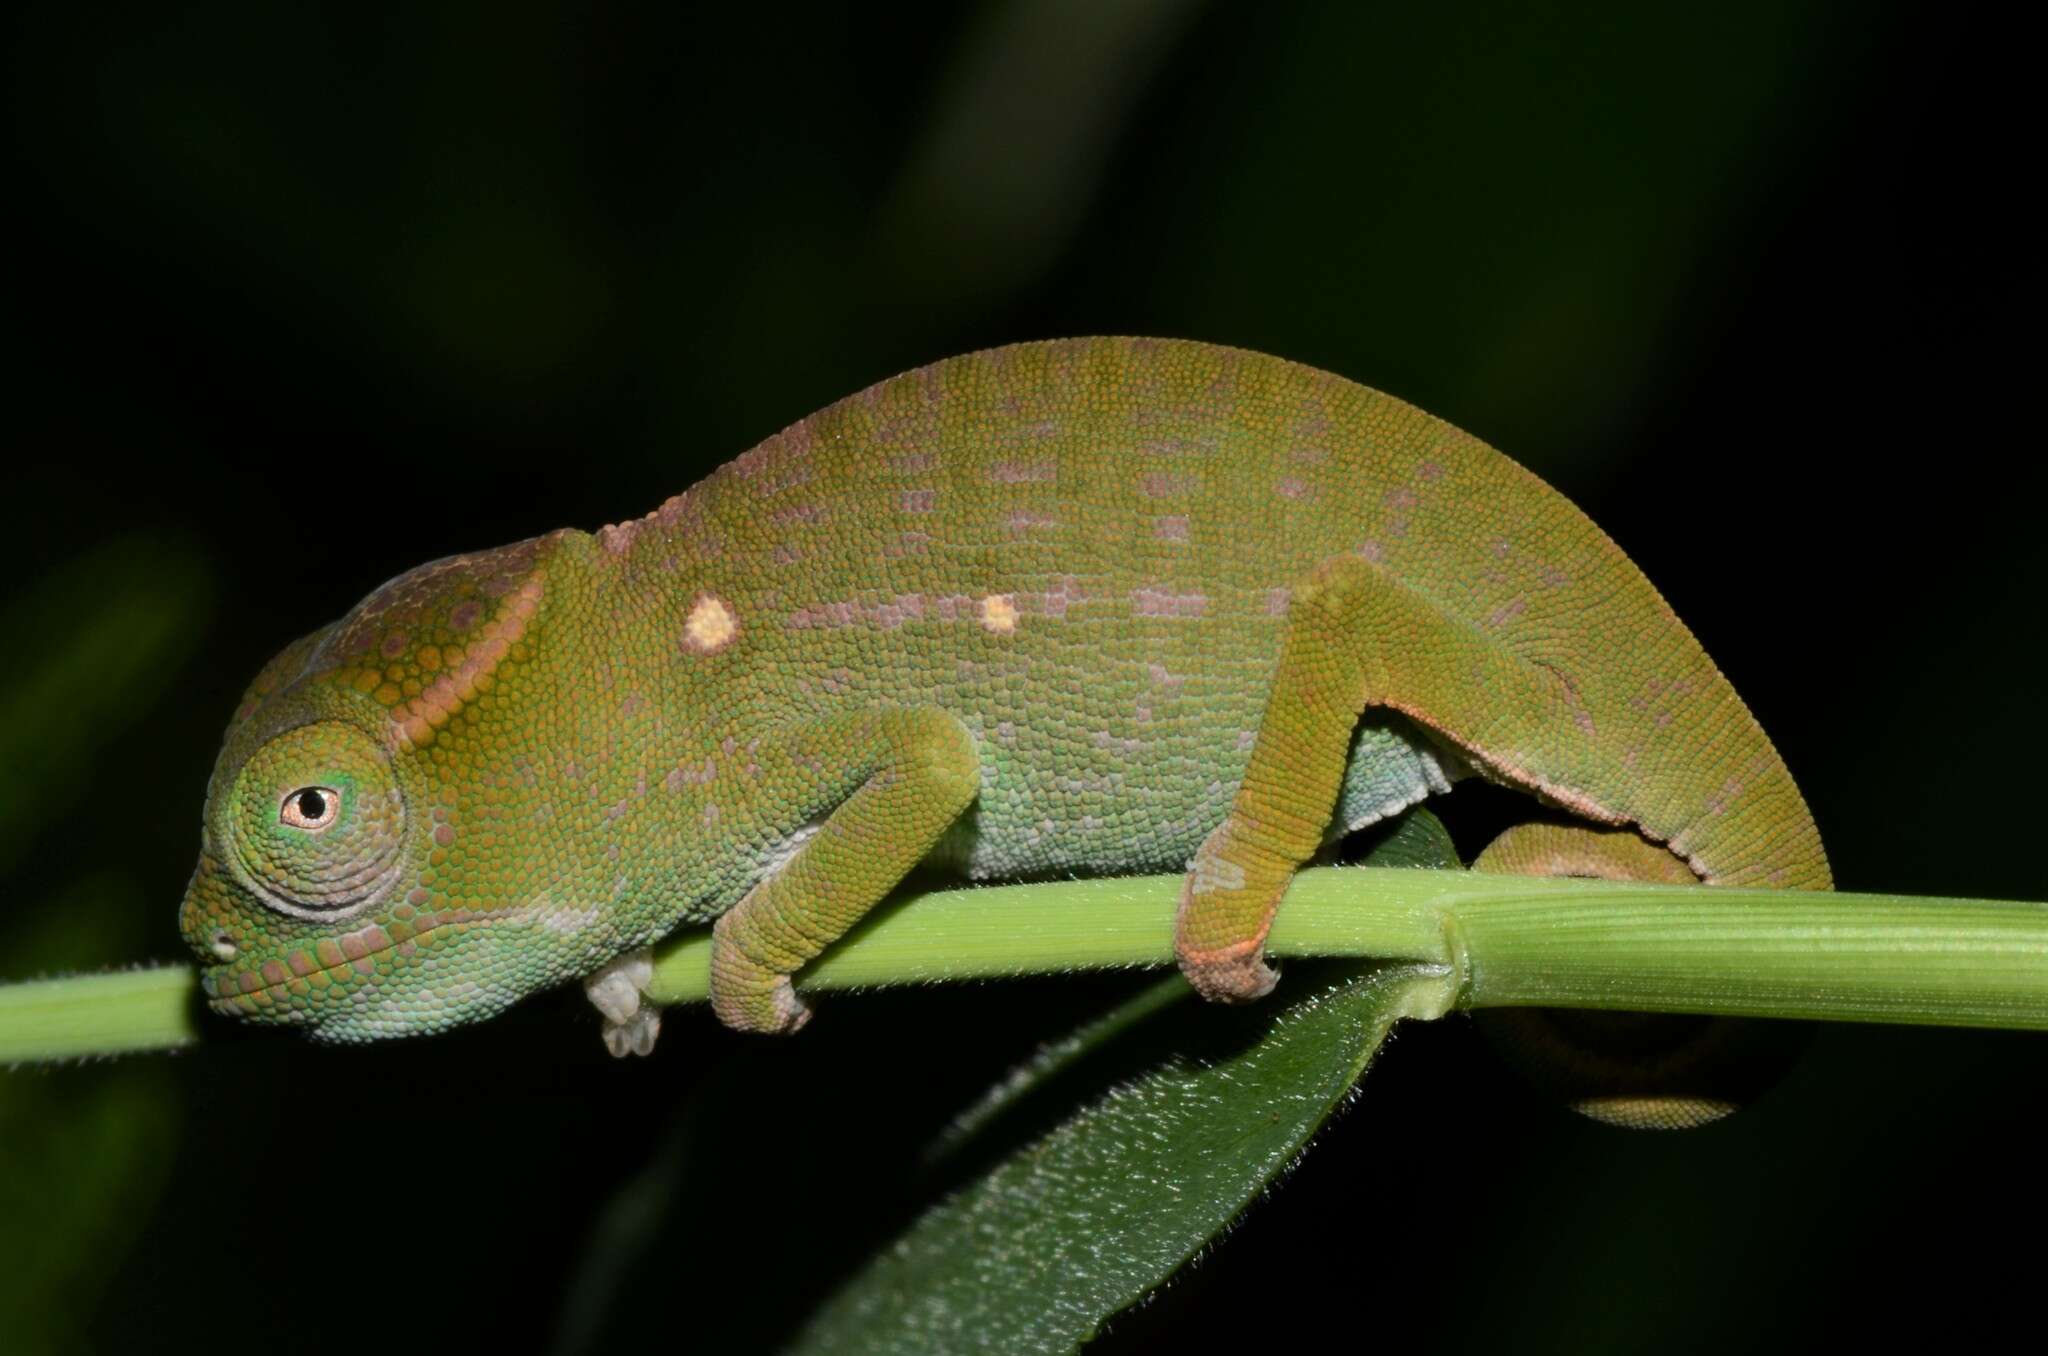 Image of Petter's Chameleon